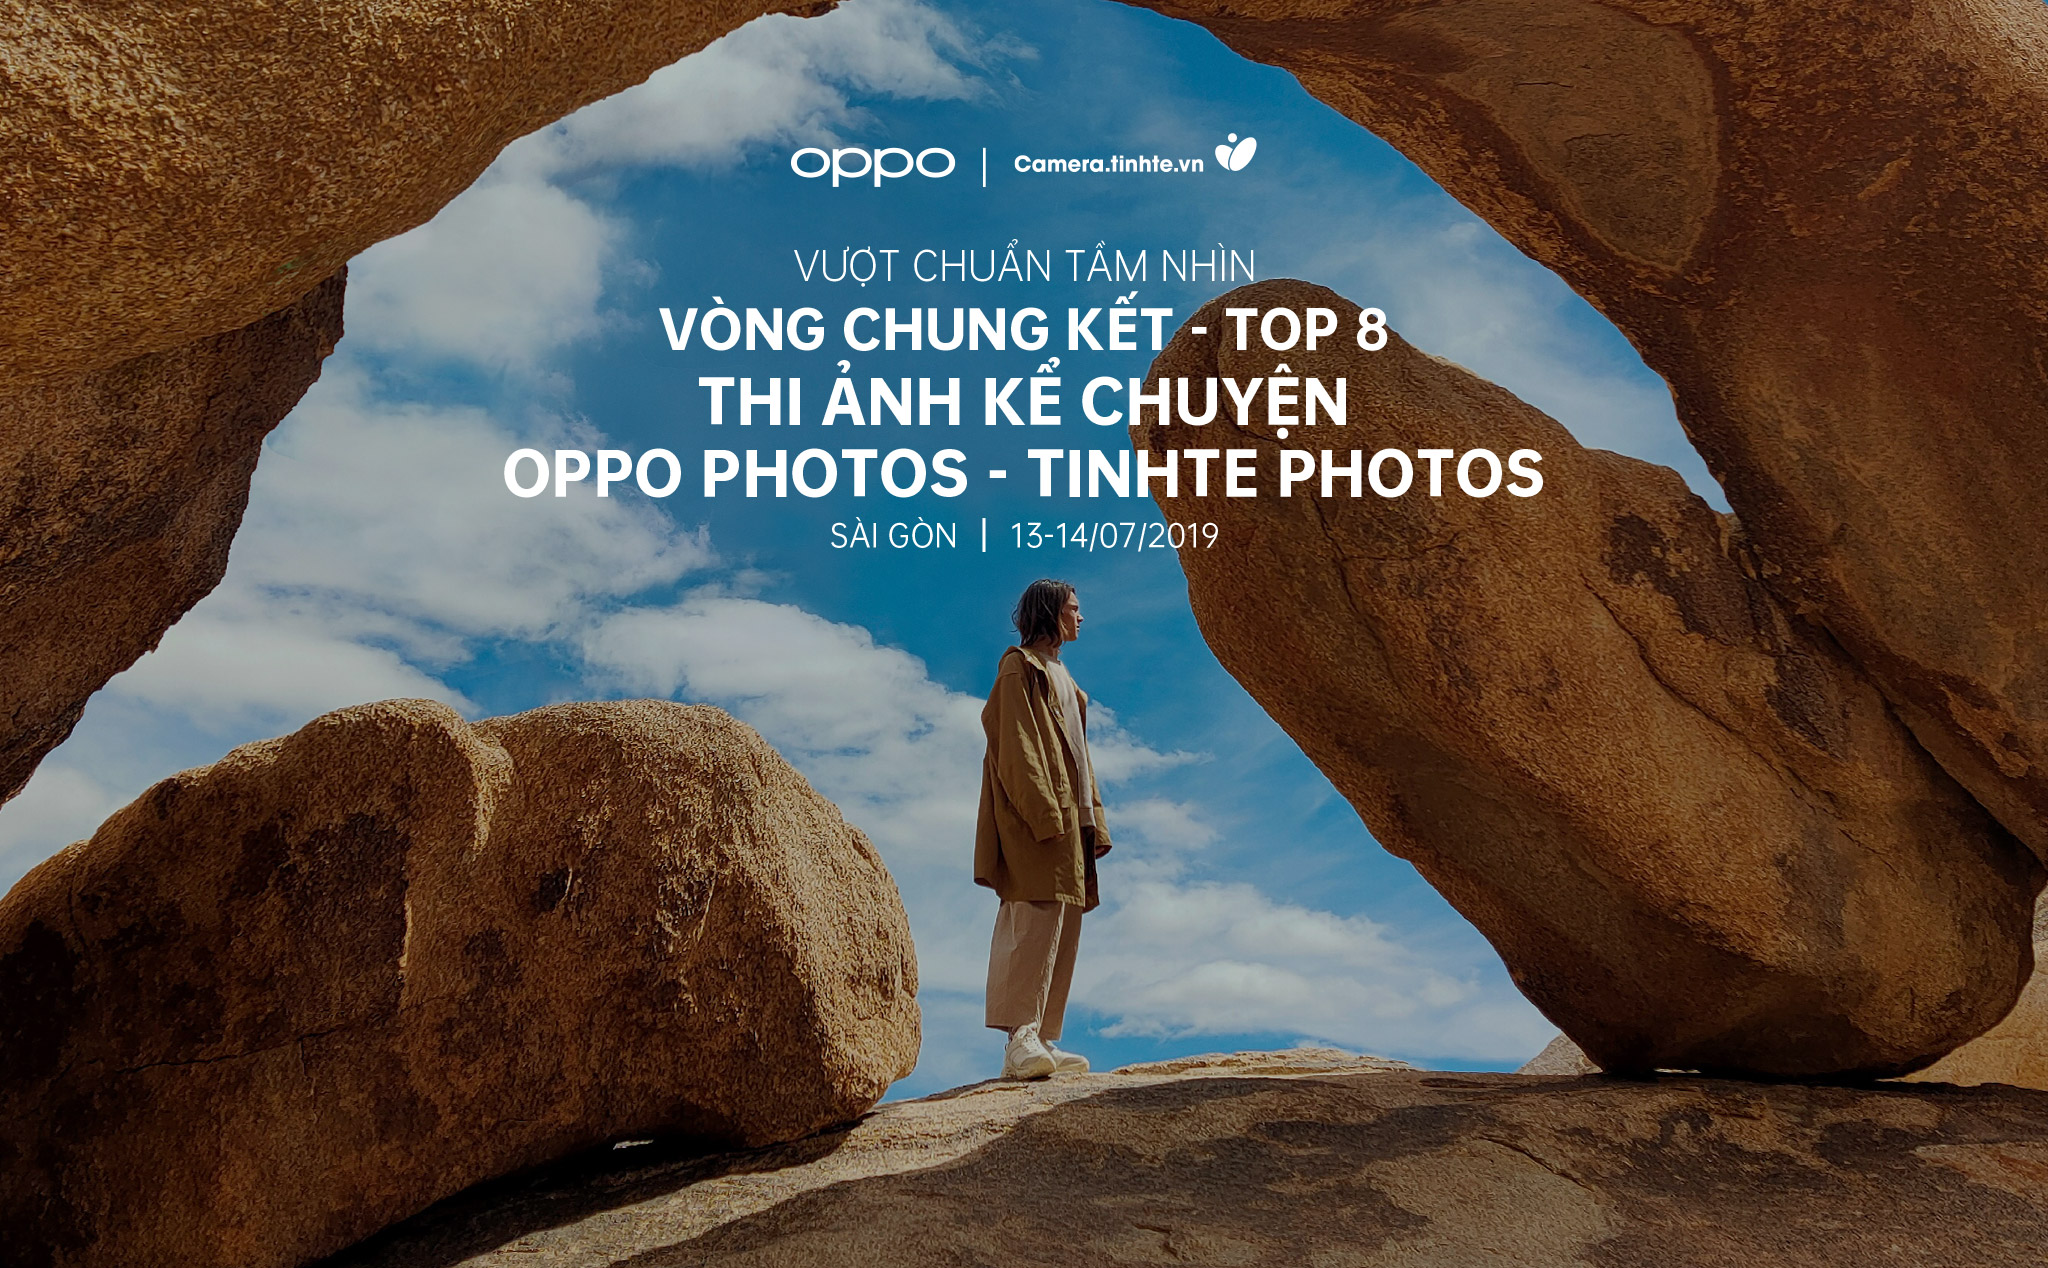 Đây là Top 8 vòng chung kết Workshop Photo Essay & Storytelling - Oppo Photos & Tinhte Photos